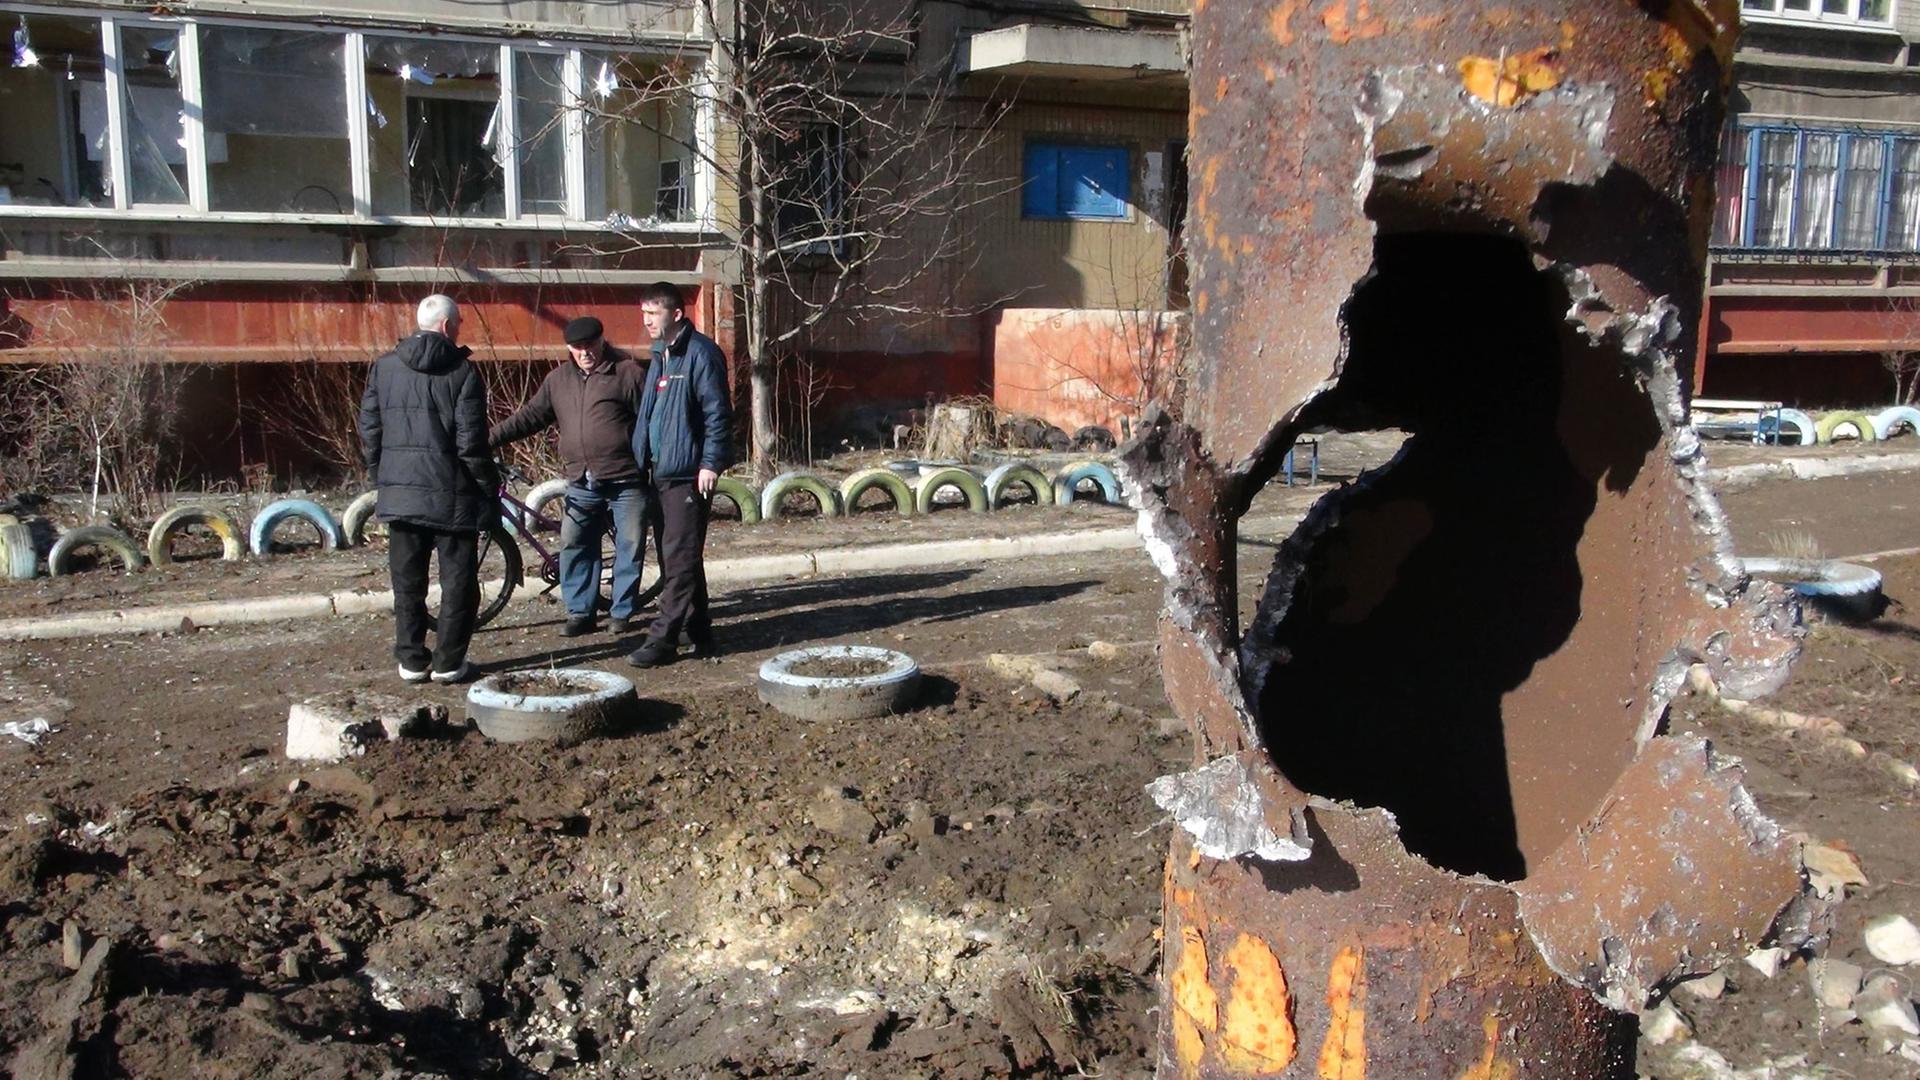 Männer stehen in einer offenbar durch Waffenbeschuss zerstörten Gegend in Donezk.